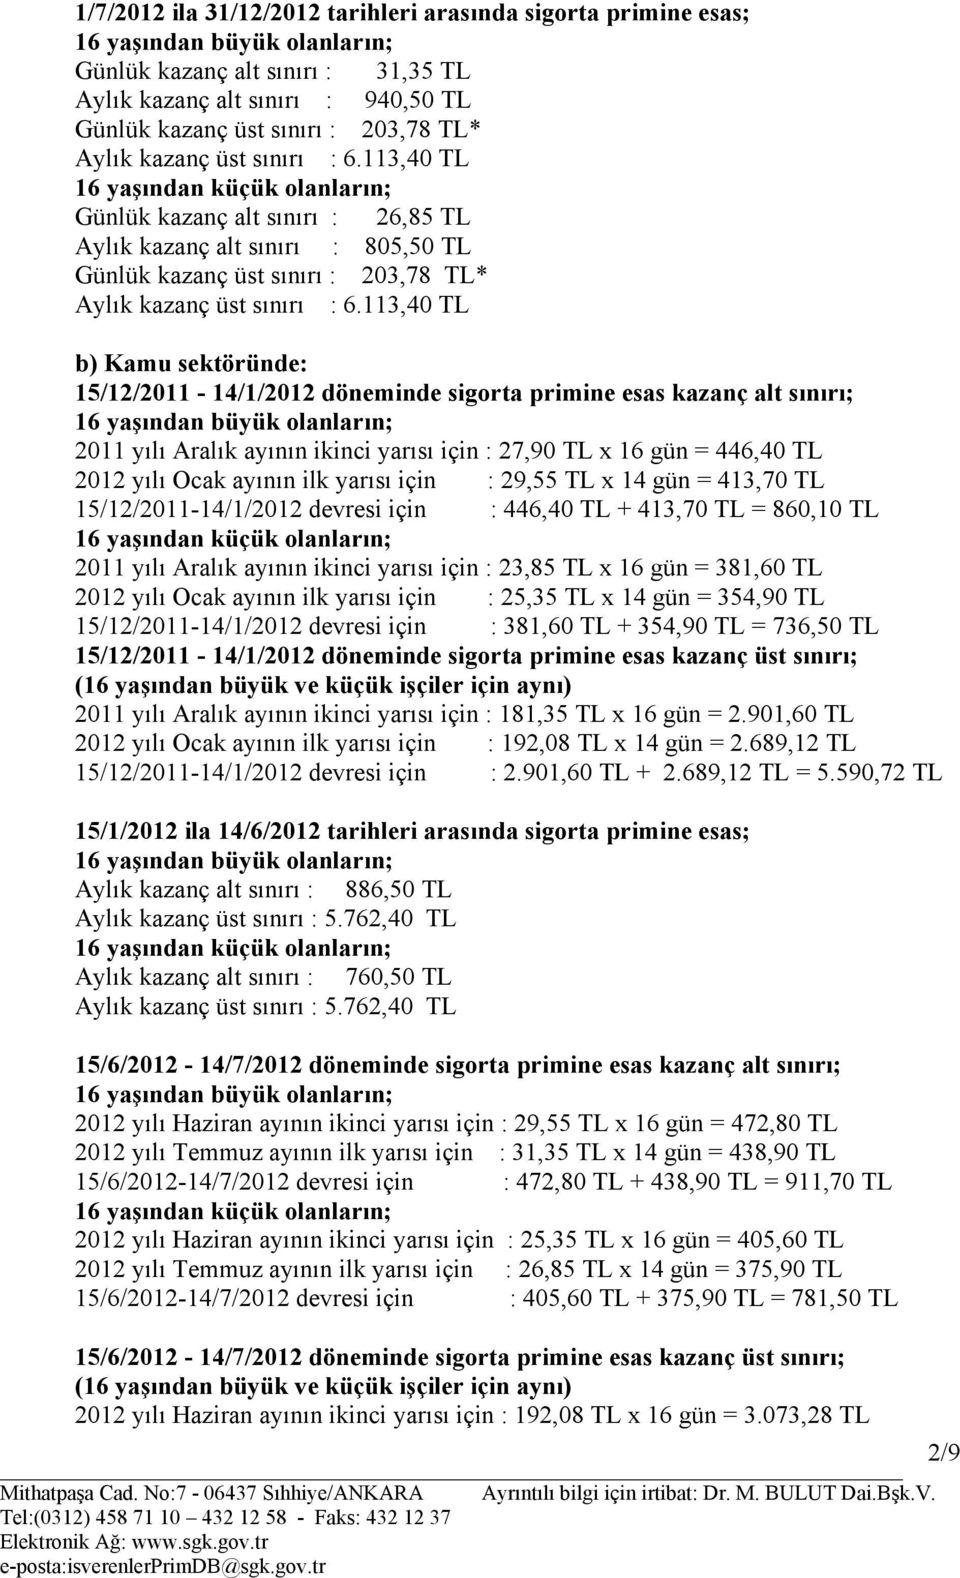 113,40 TL b) Kamu sektöründe: 15/12/2011-14/1/2012 döneminde sigorta primine esas kazanç alt sınırı; 2011 yılı Aralık ayının ikinci yarısı için : 27,90 TL x 16 gün = 446,40 TL 2012 yılı Ocak ayının